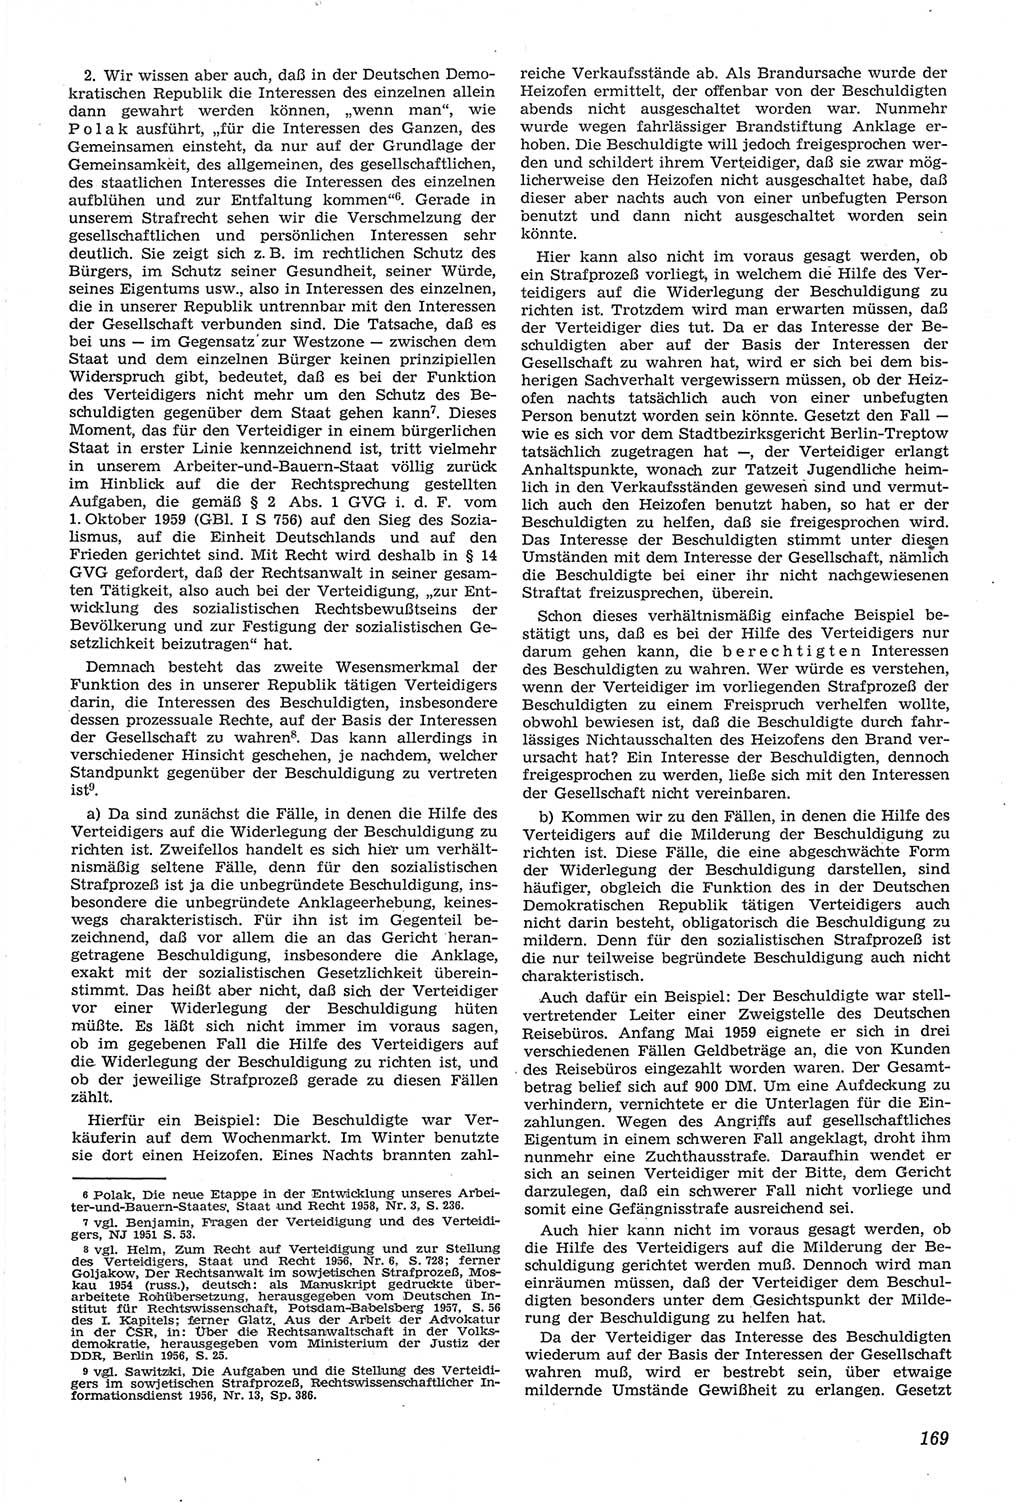 Neue Justiz (NJ), Zeitschrift für Recht und Rechtswissenschaft [Deutsche Demokratische Republik (DDR)], 14. Jahrgang 1960, Seite 169 (NJ DDR 1960, S. 169)